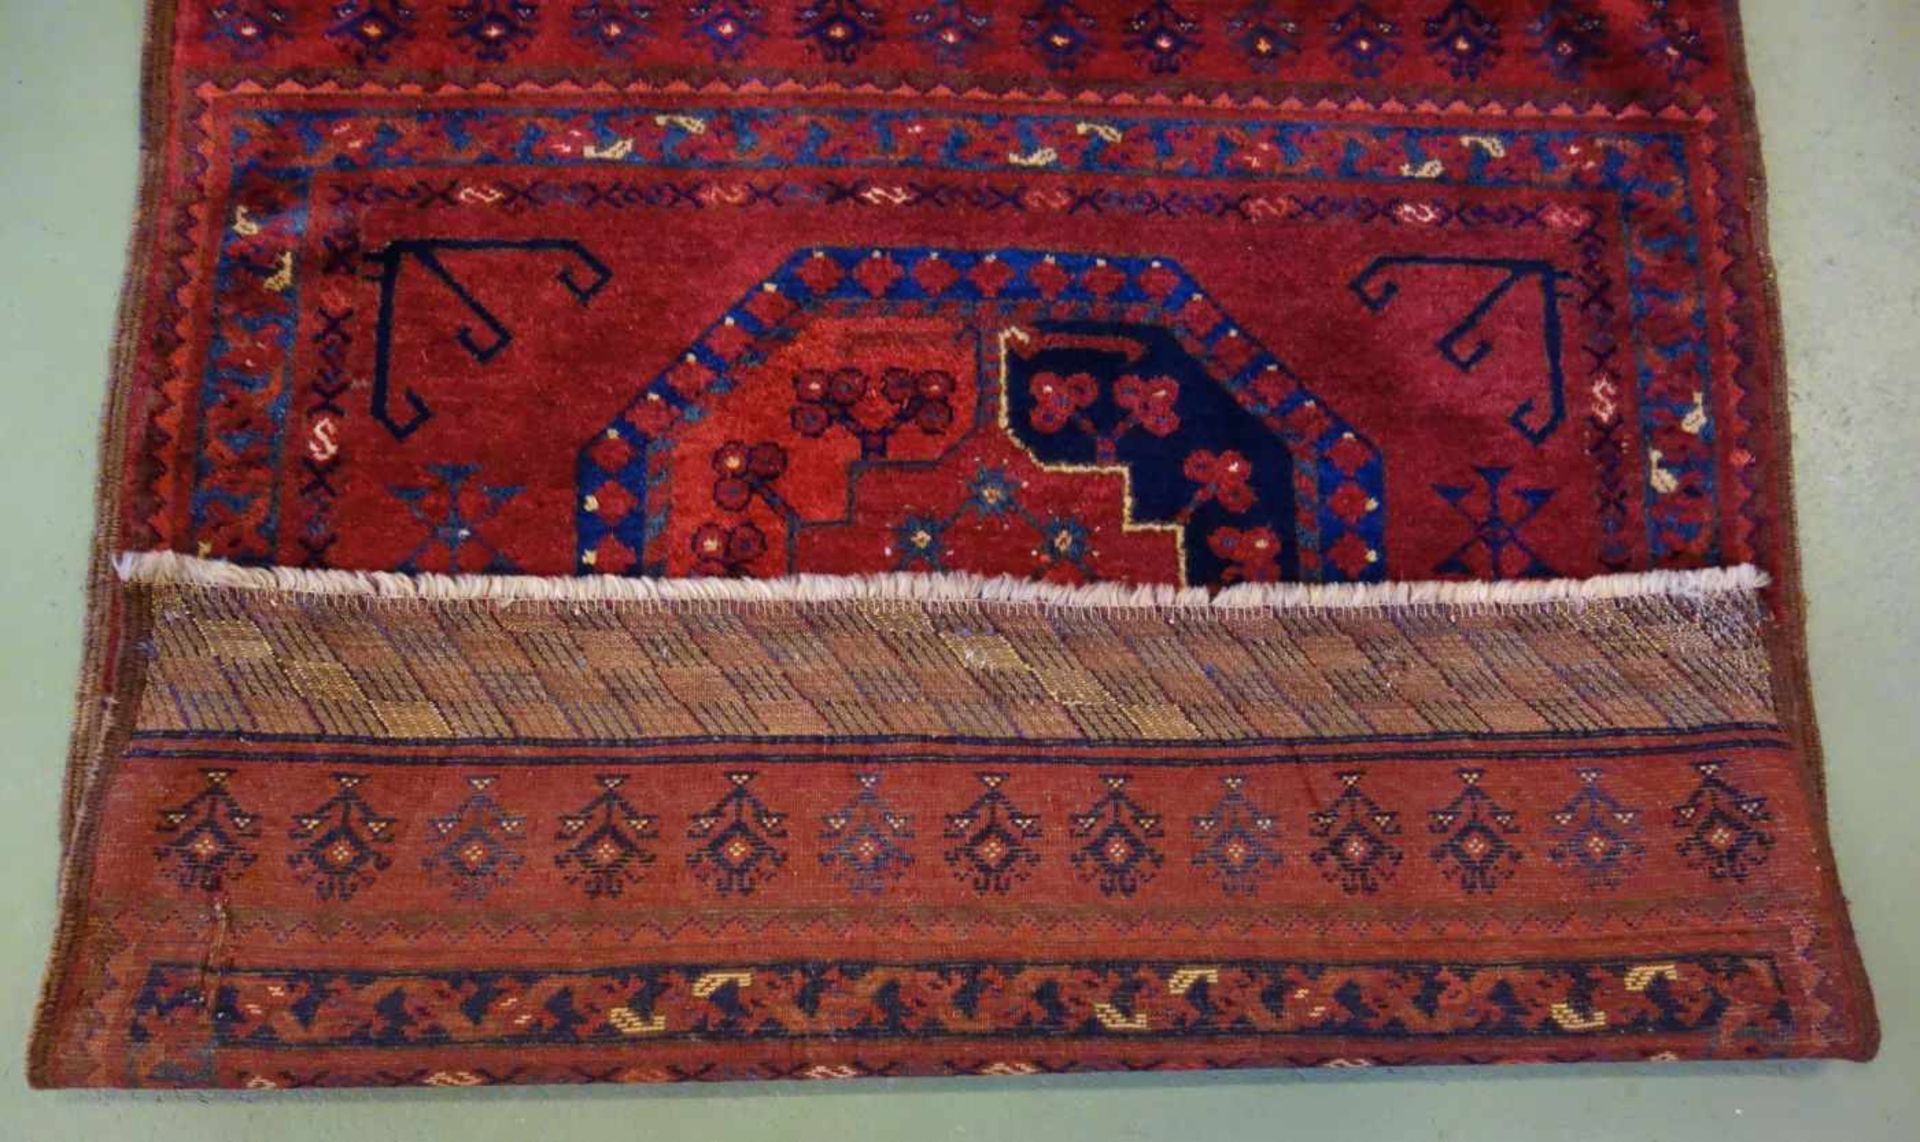 SELTENER KLEINER TEPPICH / ERSARI / carpet, Turkmenen / Westturkestan, wohl 2. H. 19. Jh., wohl - Image 11 of 12